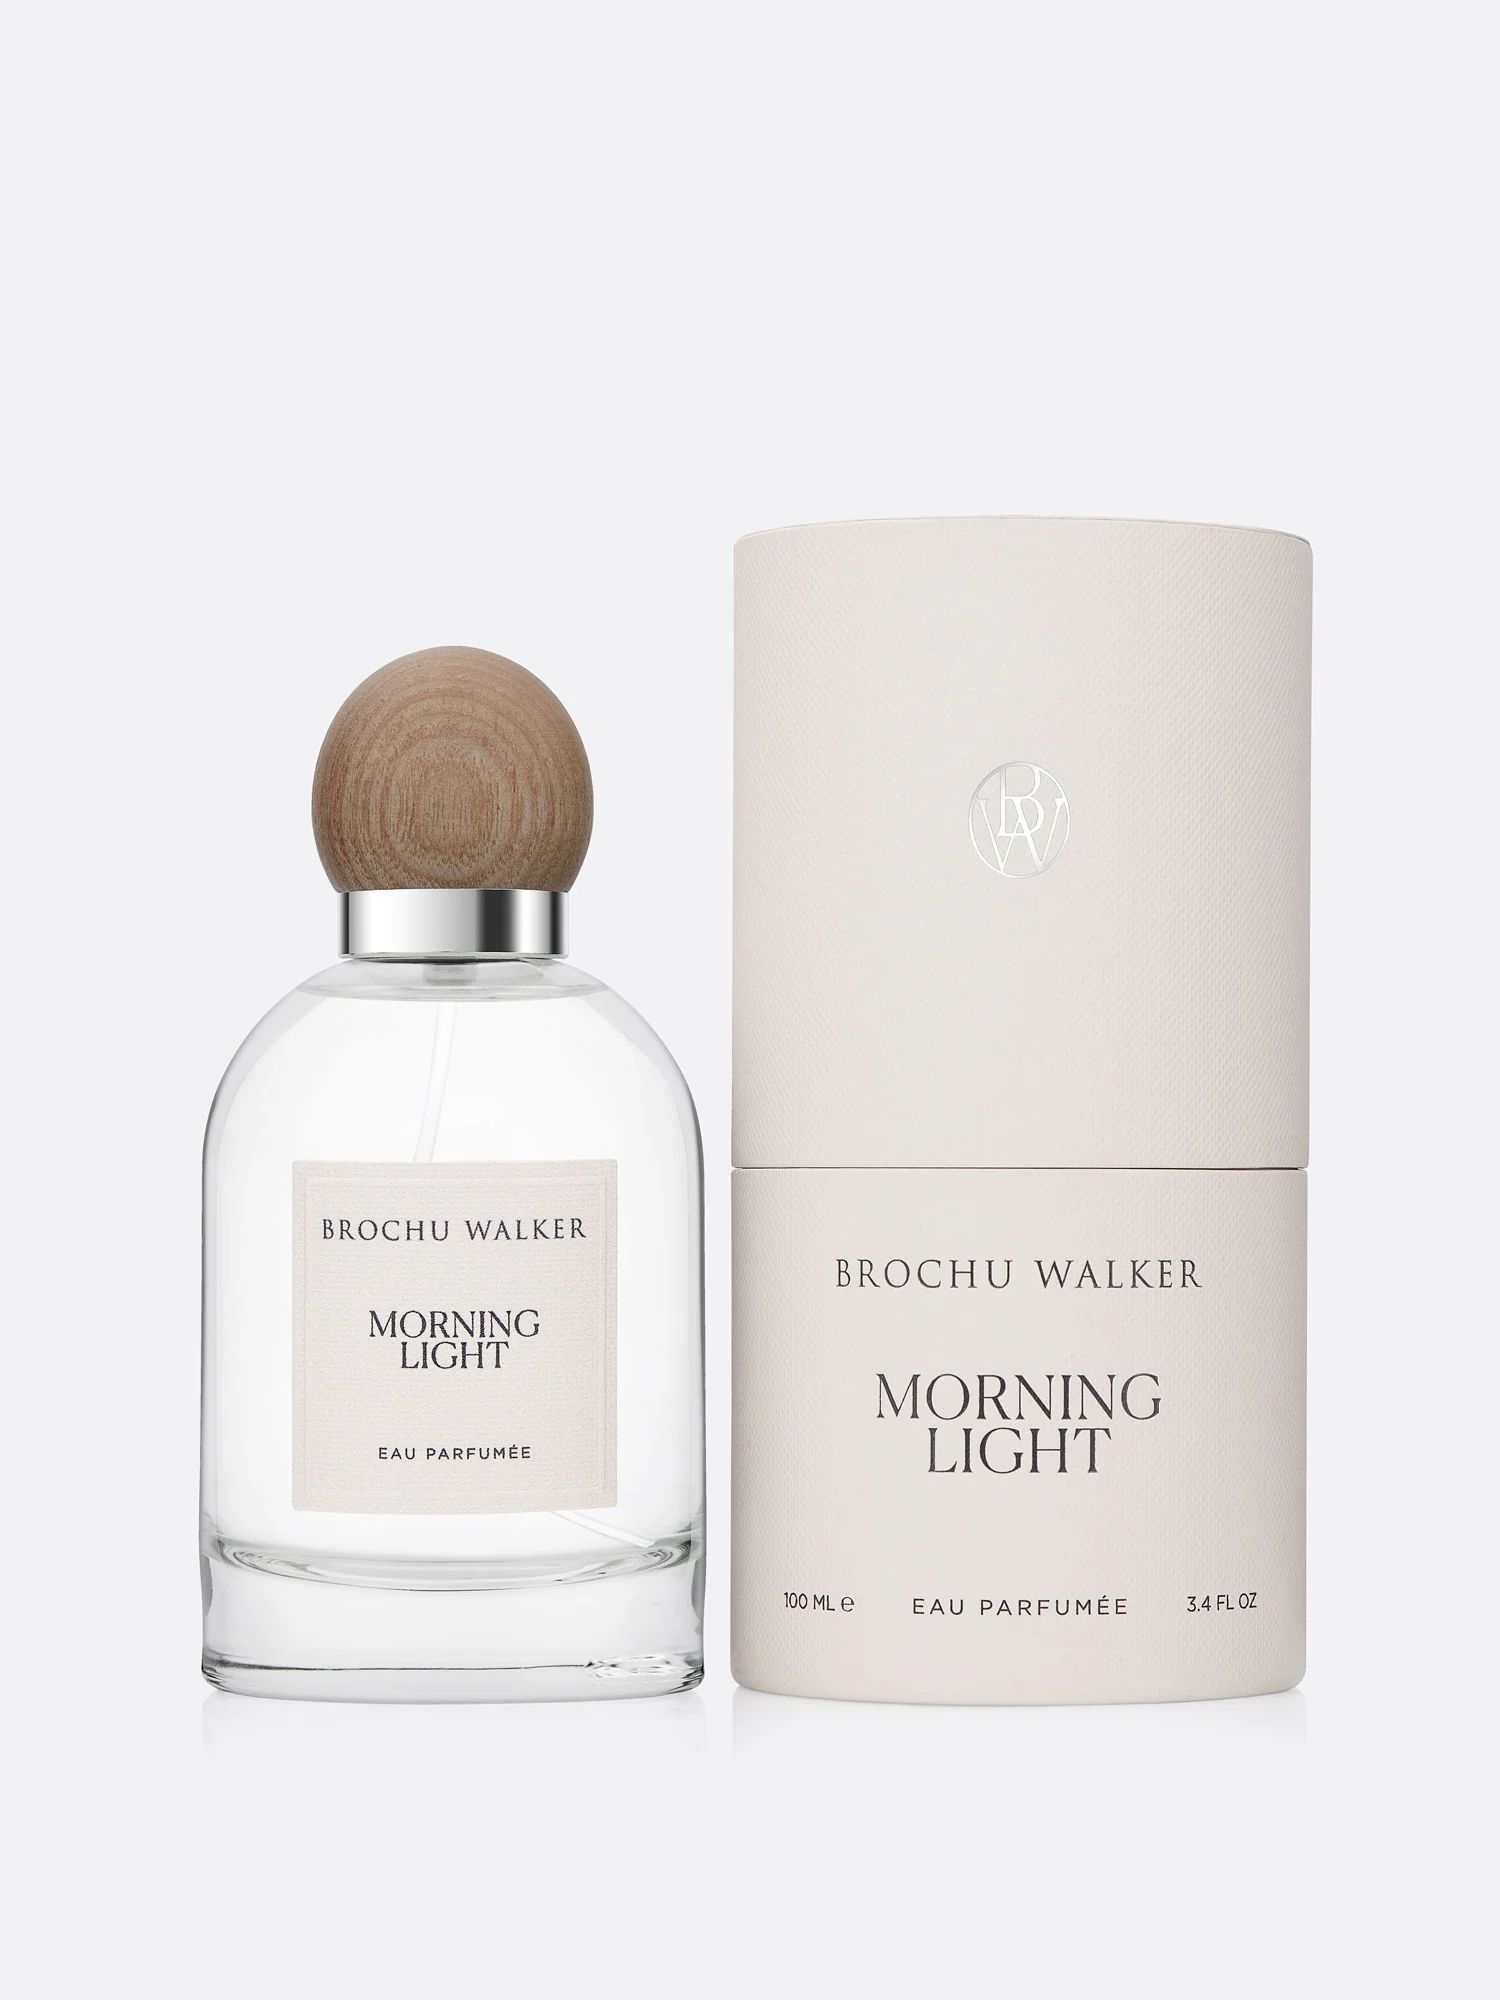 Brochu Walker | Women's Eau Parfumee Spray in Morning Light | Brochu Walker